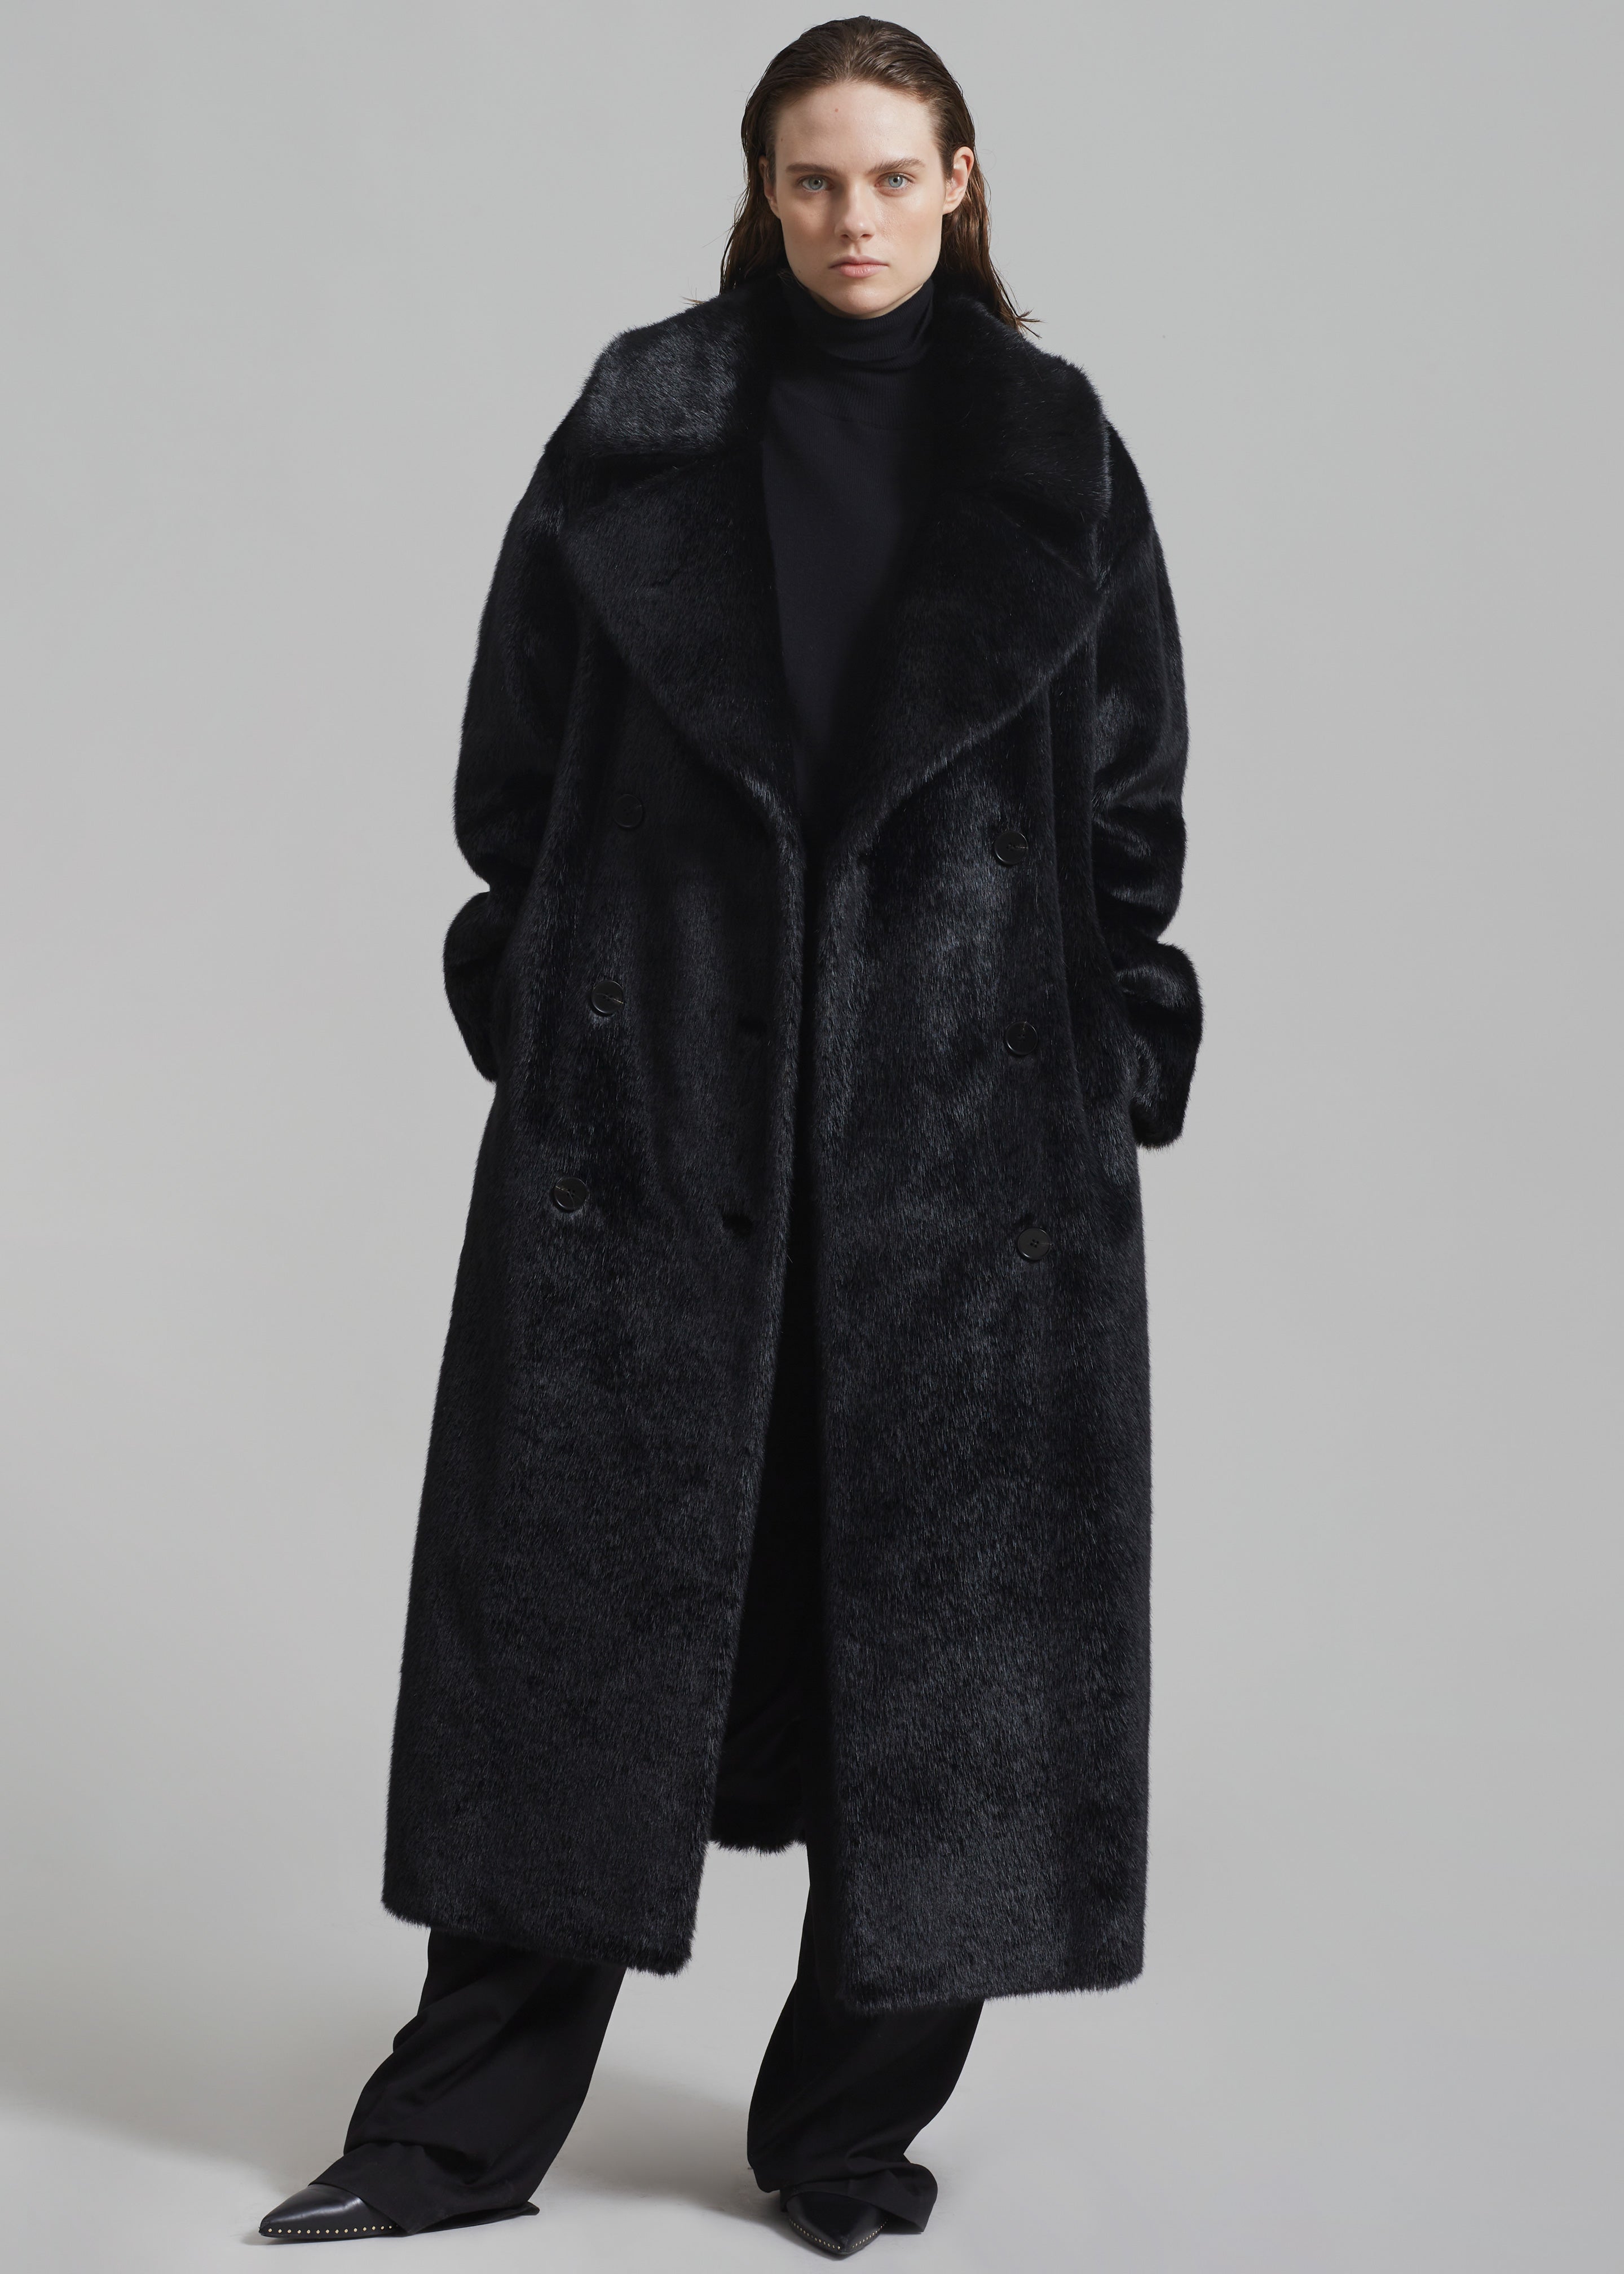 Joni Faux Fur Coat - Black - 7